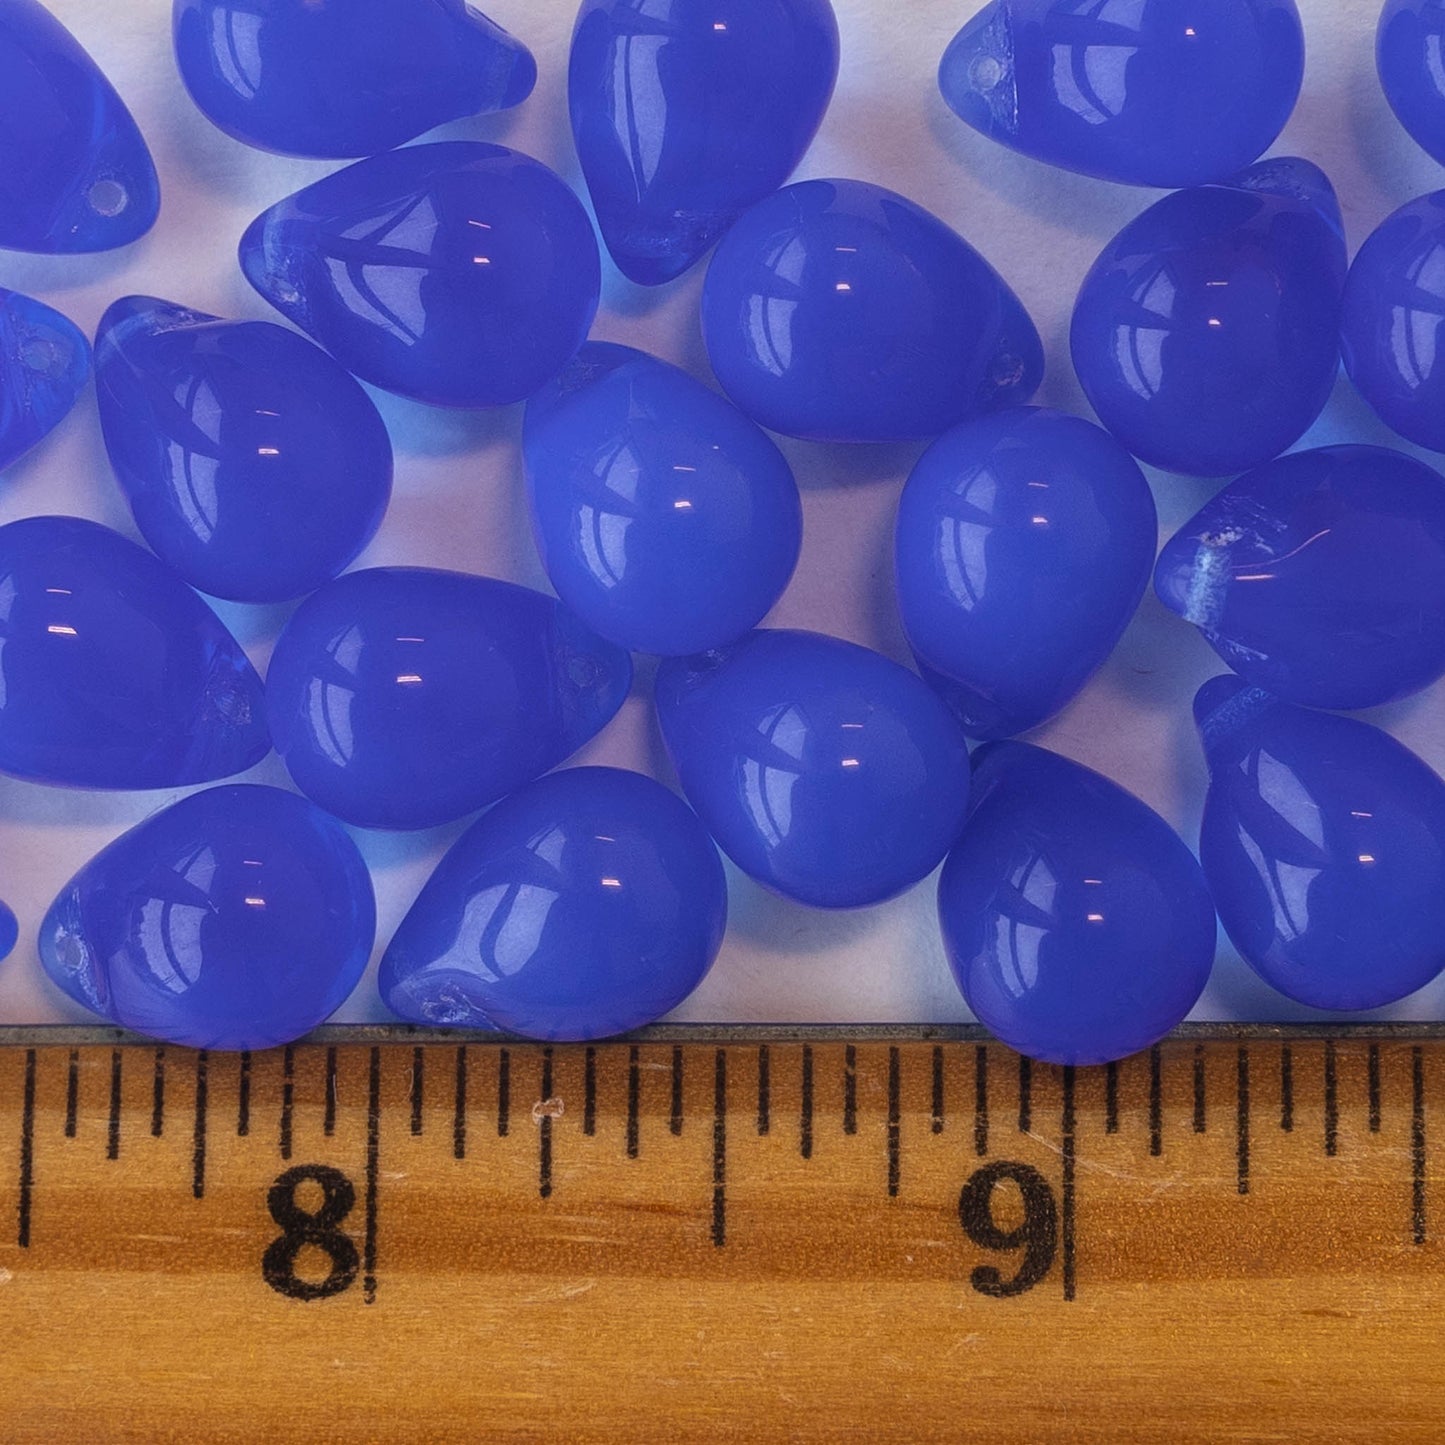 10x14mm Glass Teardrop Beads - Sapphire Blue Opaline - 12 beads